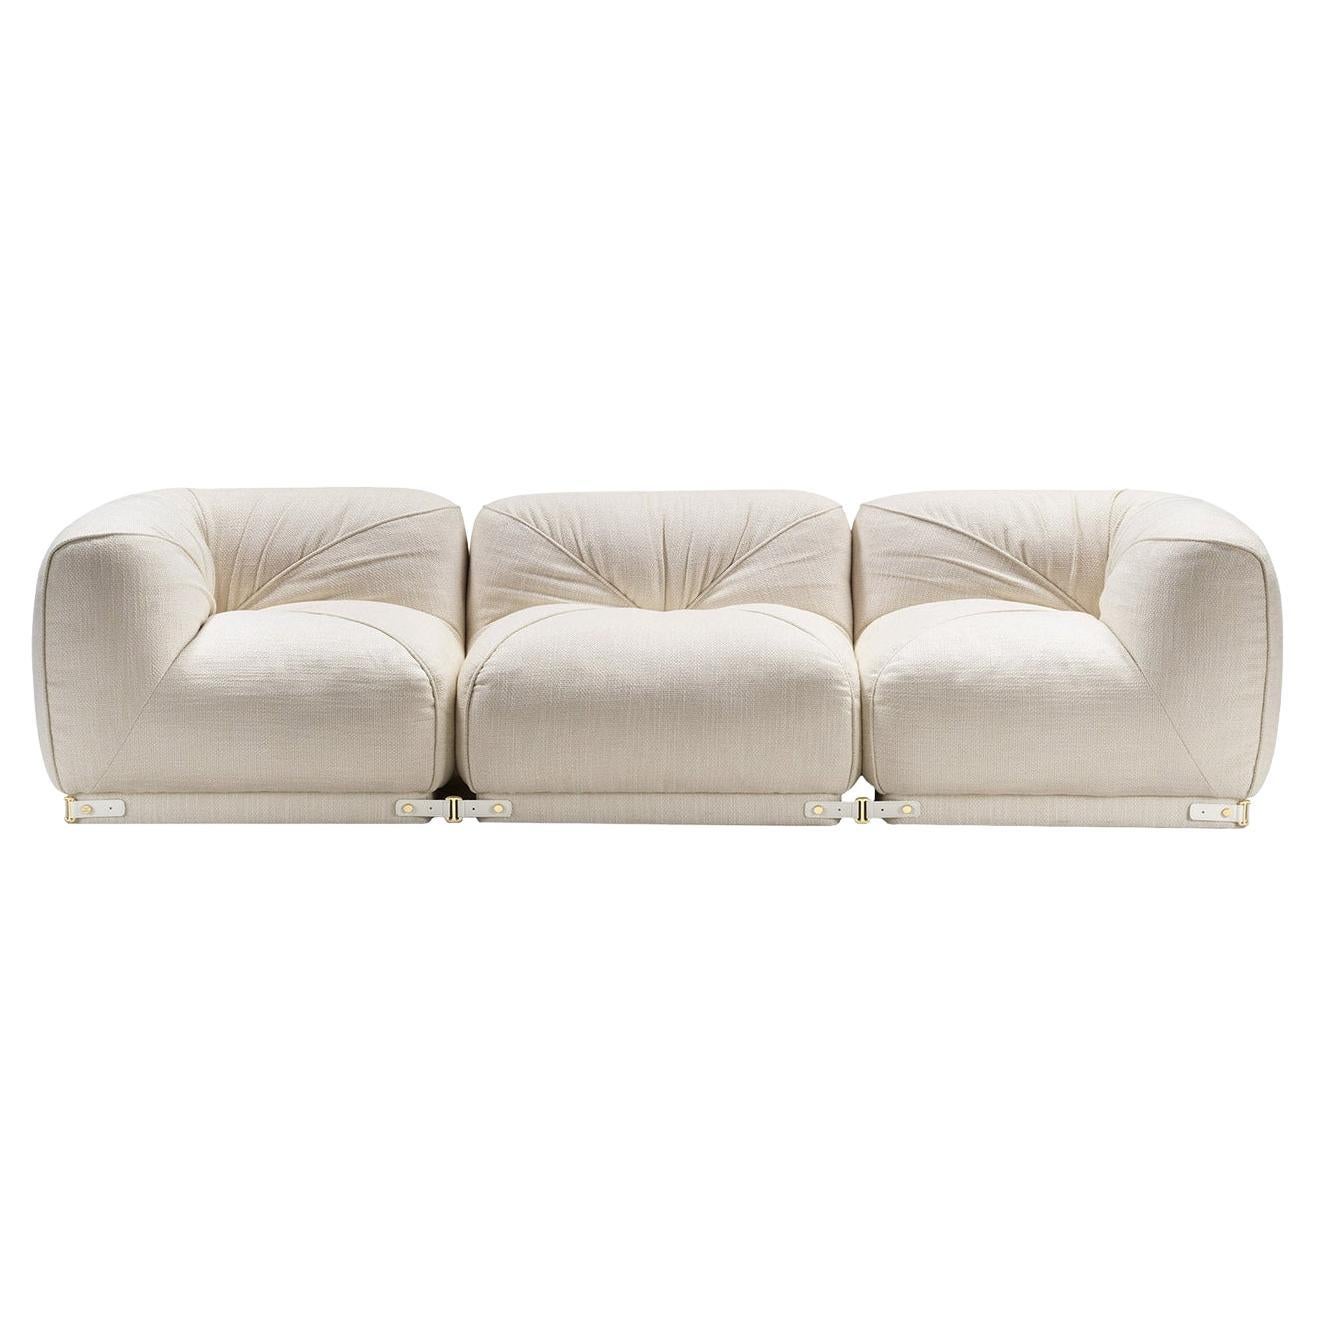 Laisure 3-sitziges weißes Sofa von Lorenza Bozzoli